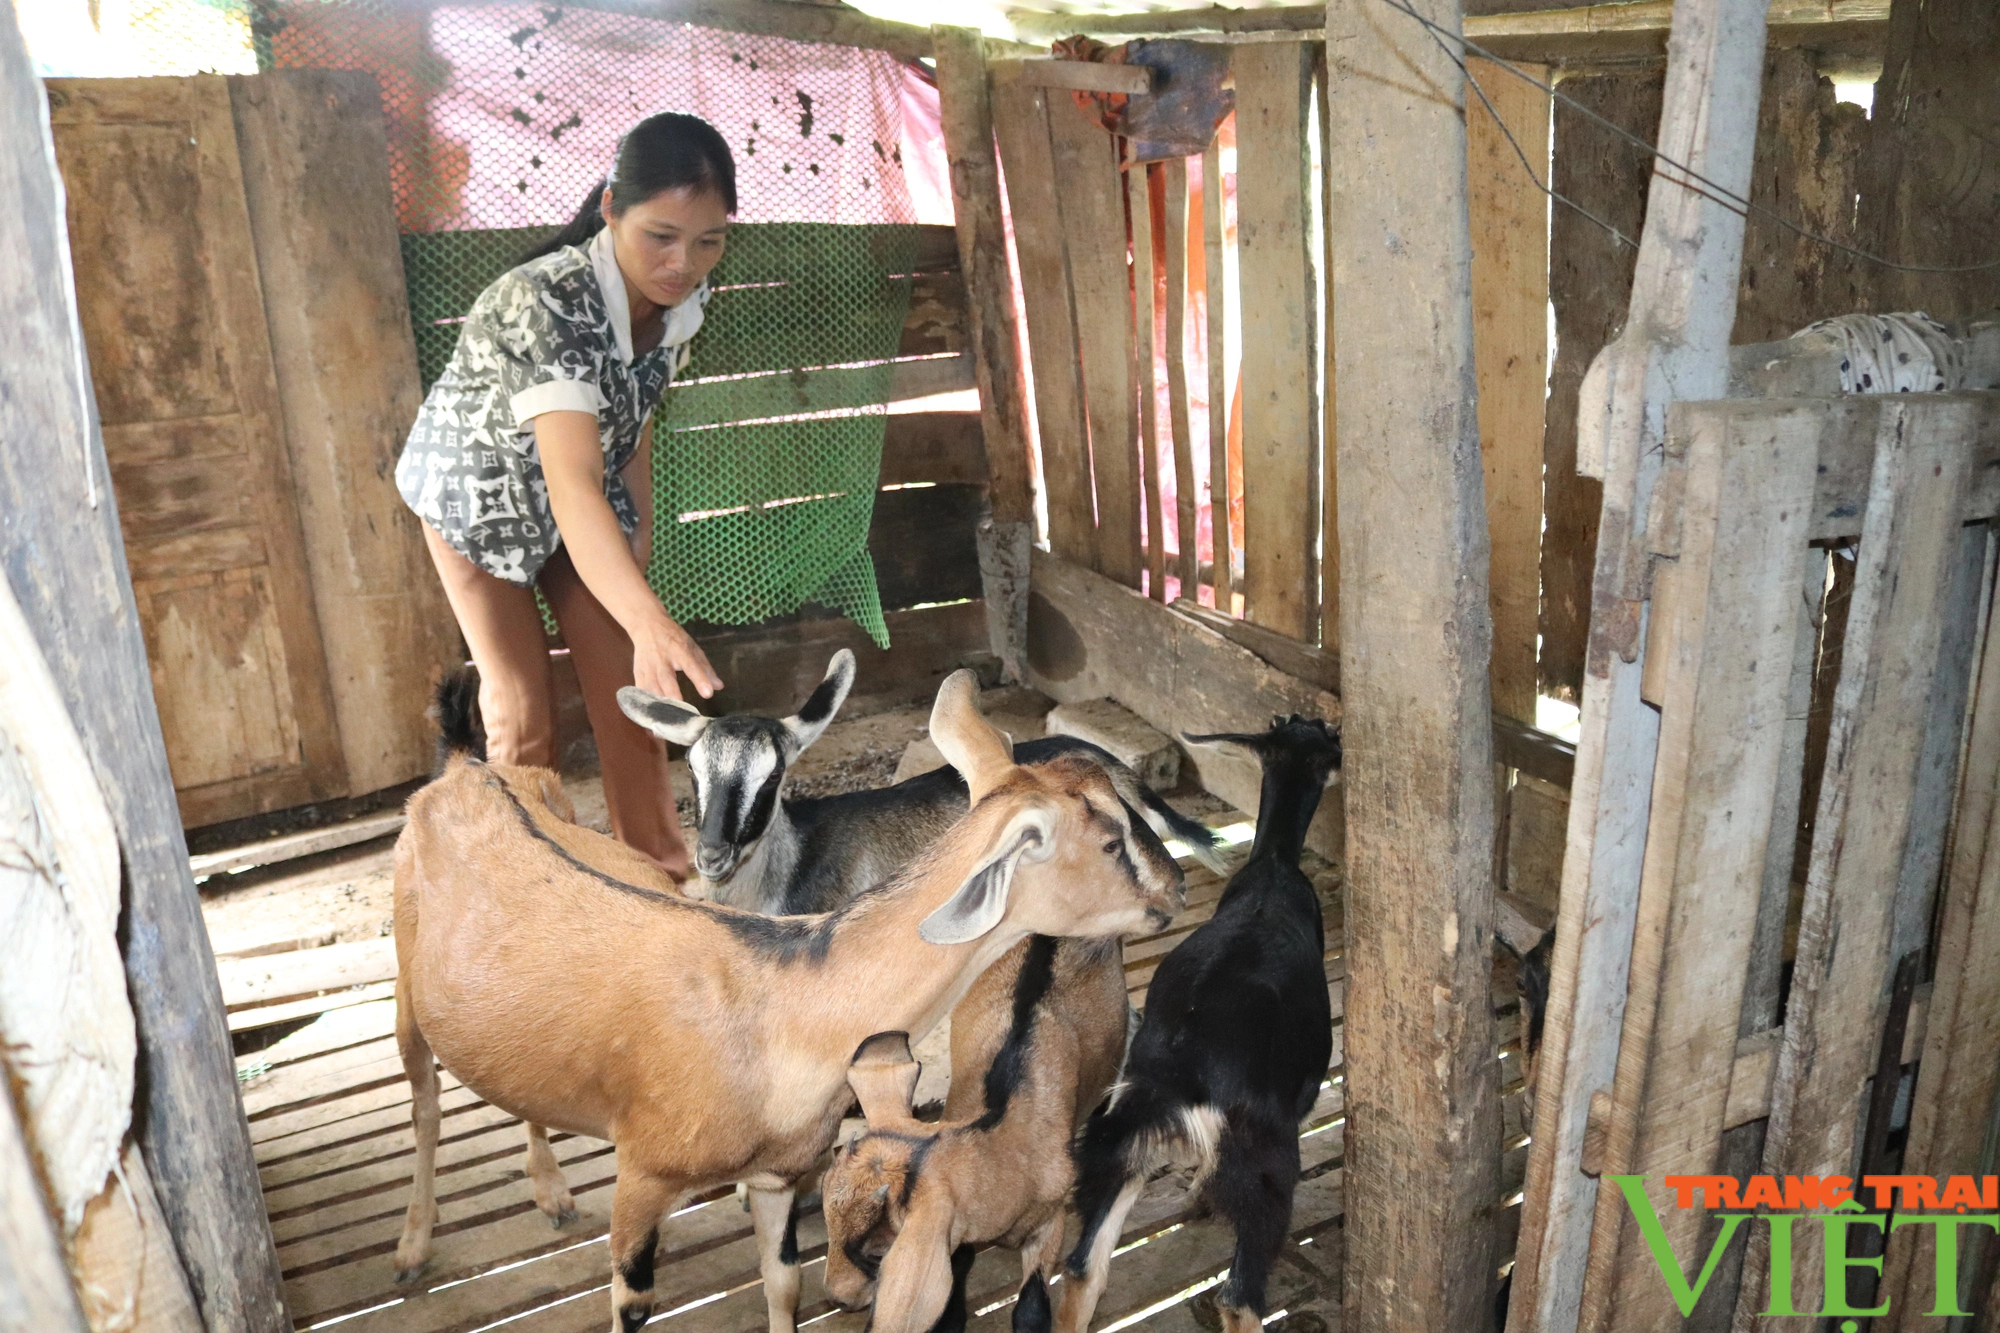 Mô hình nuôi dê sinh sản giúp người dân xã nghèo Hòa Bình nâng cao thu nhập - Ảnh 3.